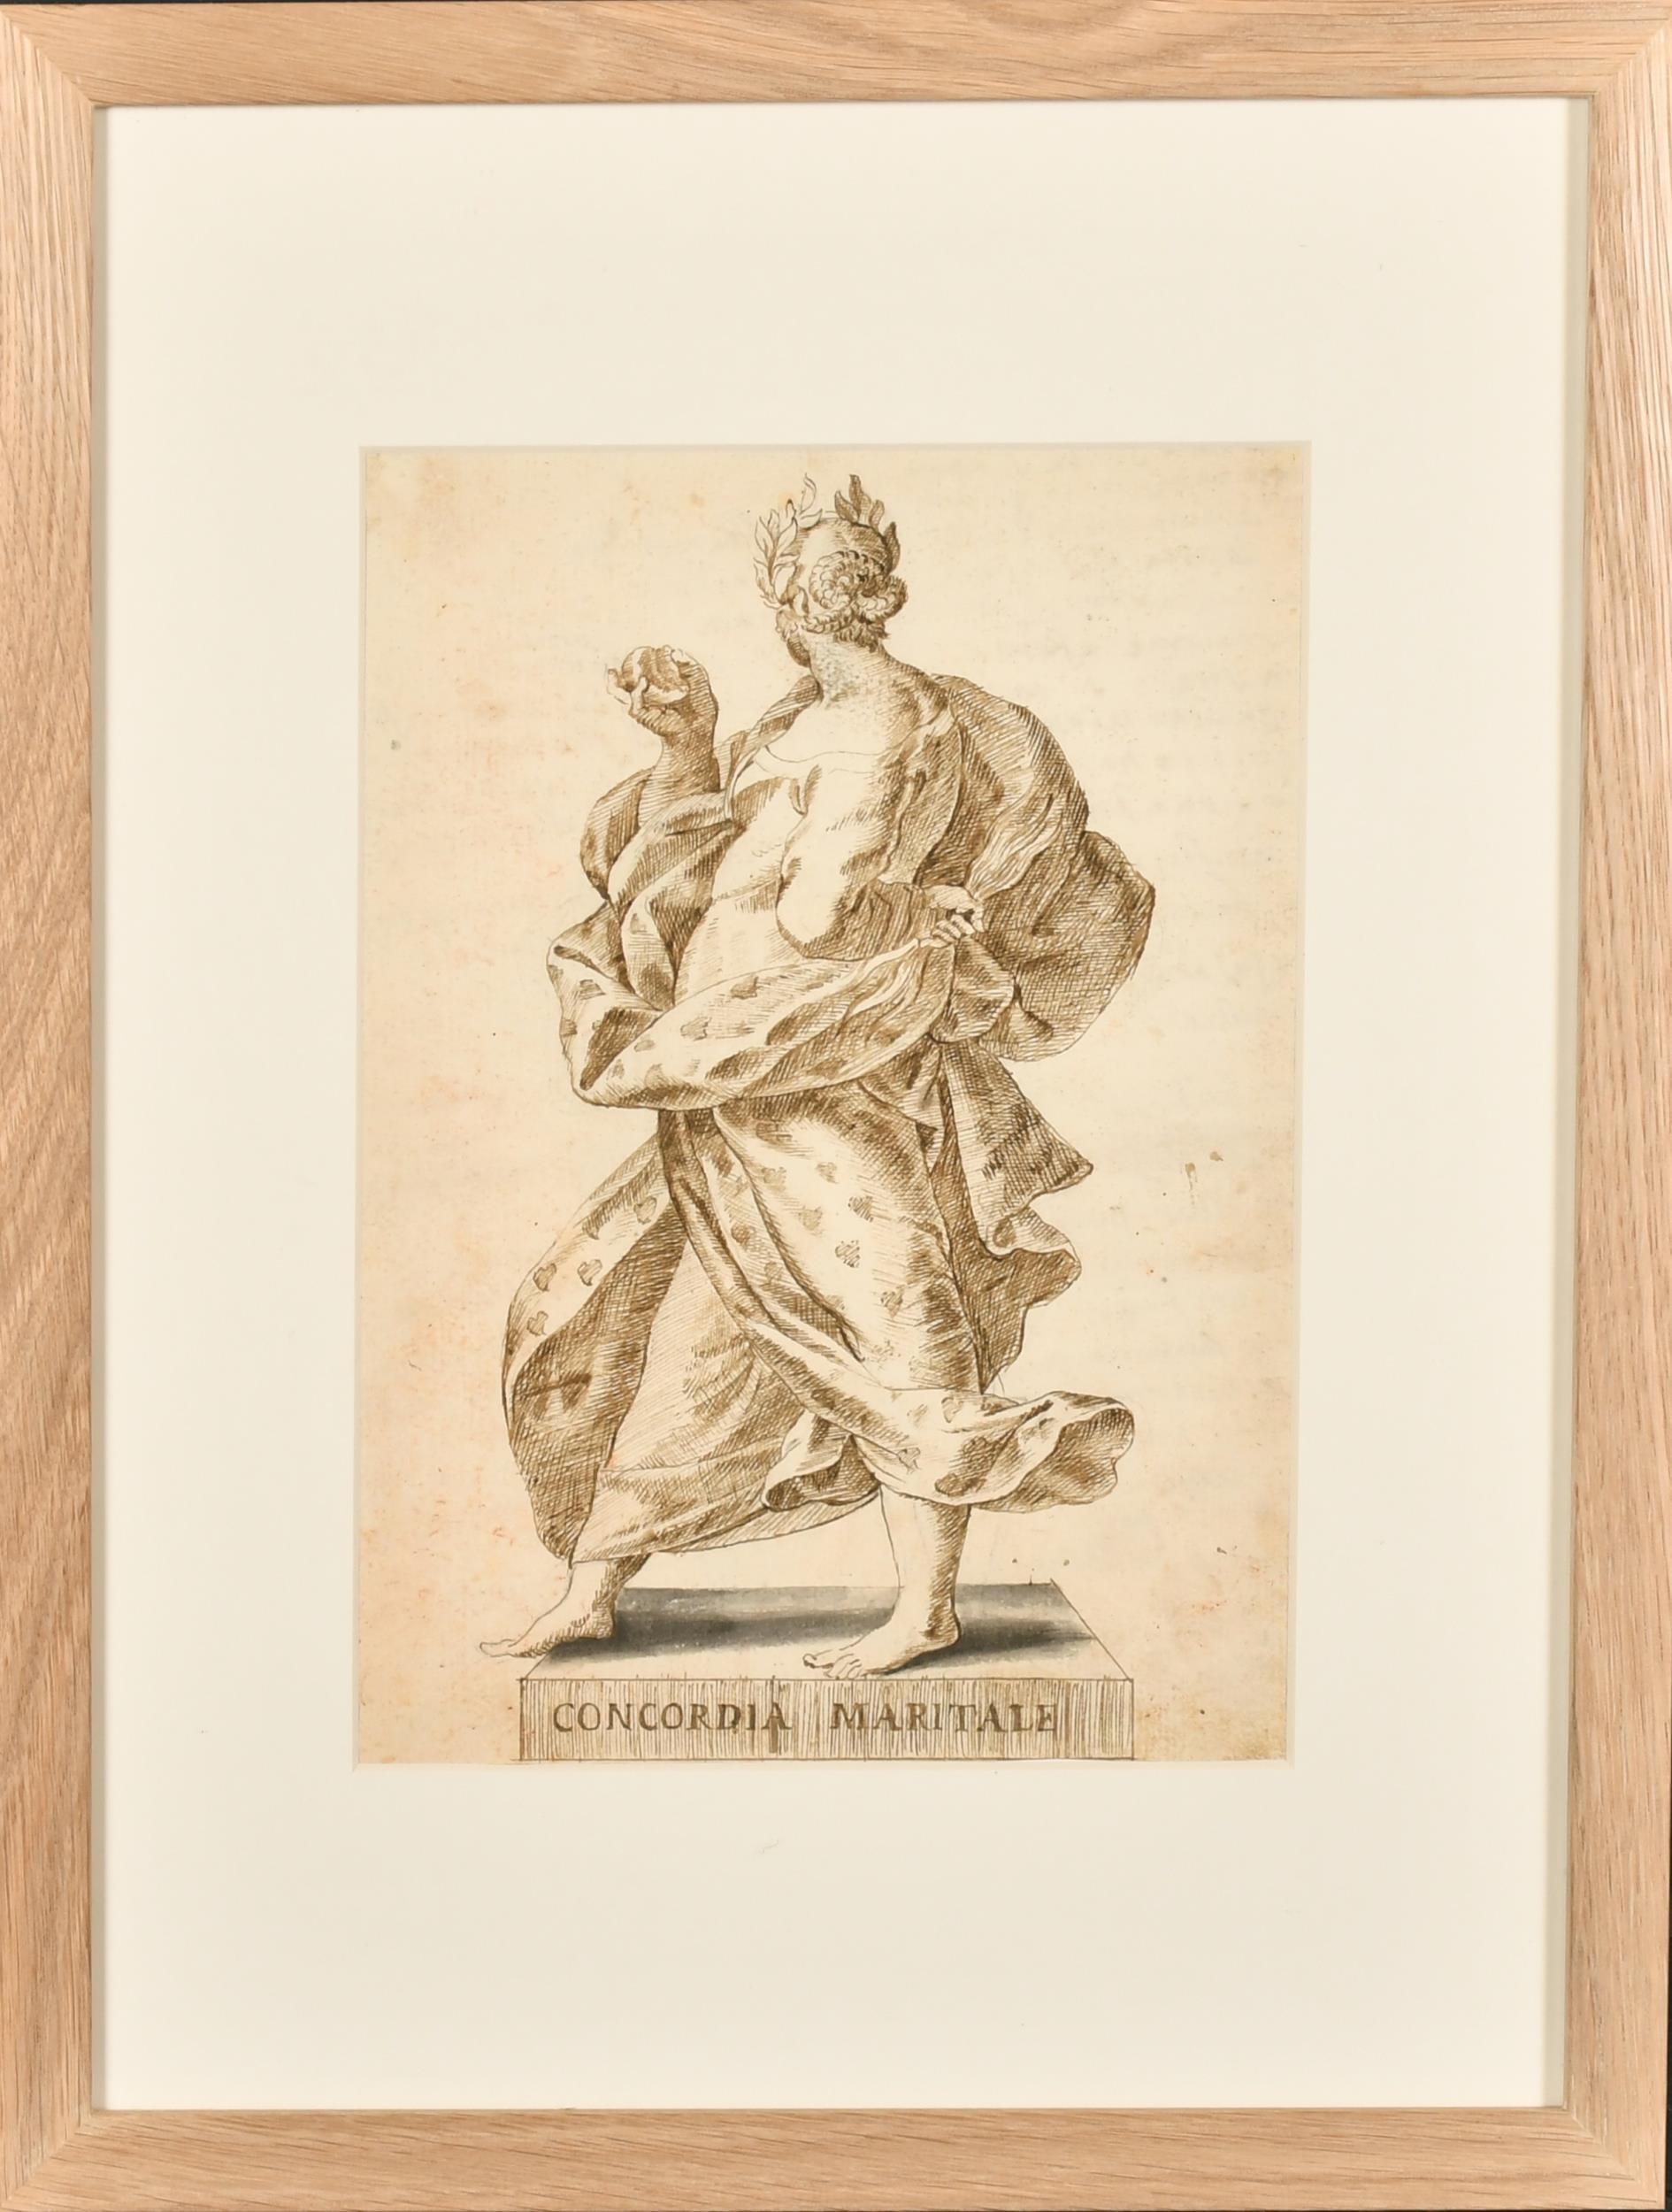 Très beau dessin à l'encre et au lavis de vieux maître italien des années 1700 Mariage allégorique romain - Painting de 18thC Italian Old Master